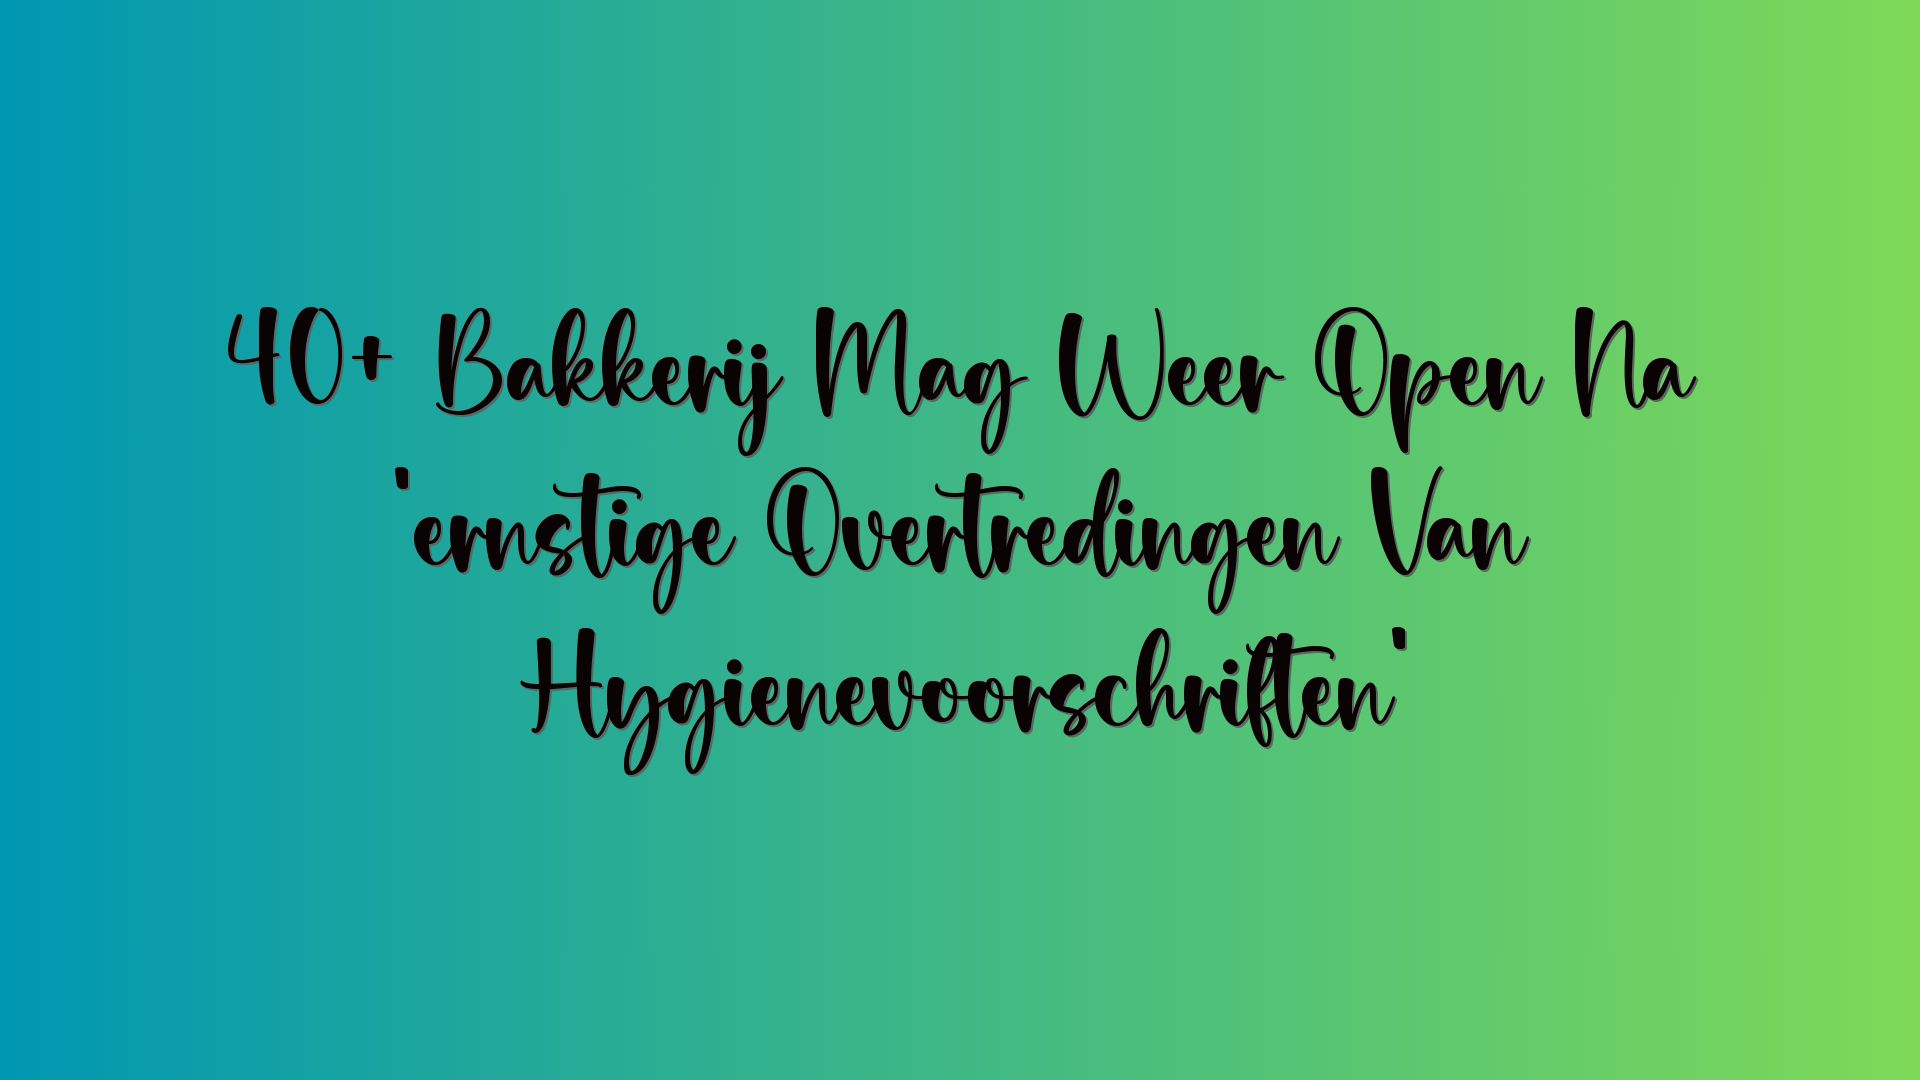 40+ Bakkerij Mag Weer Open Na ‘ernstige Overtredingen Van Hygiënevoorschriften’